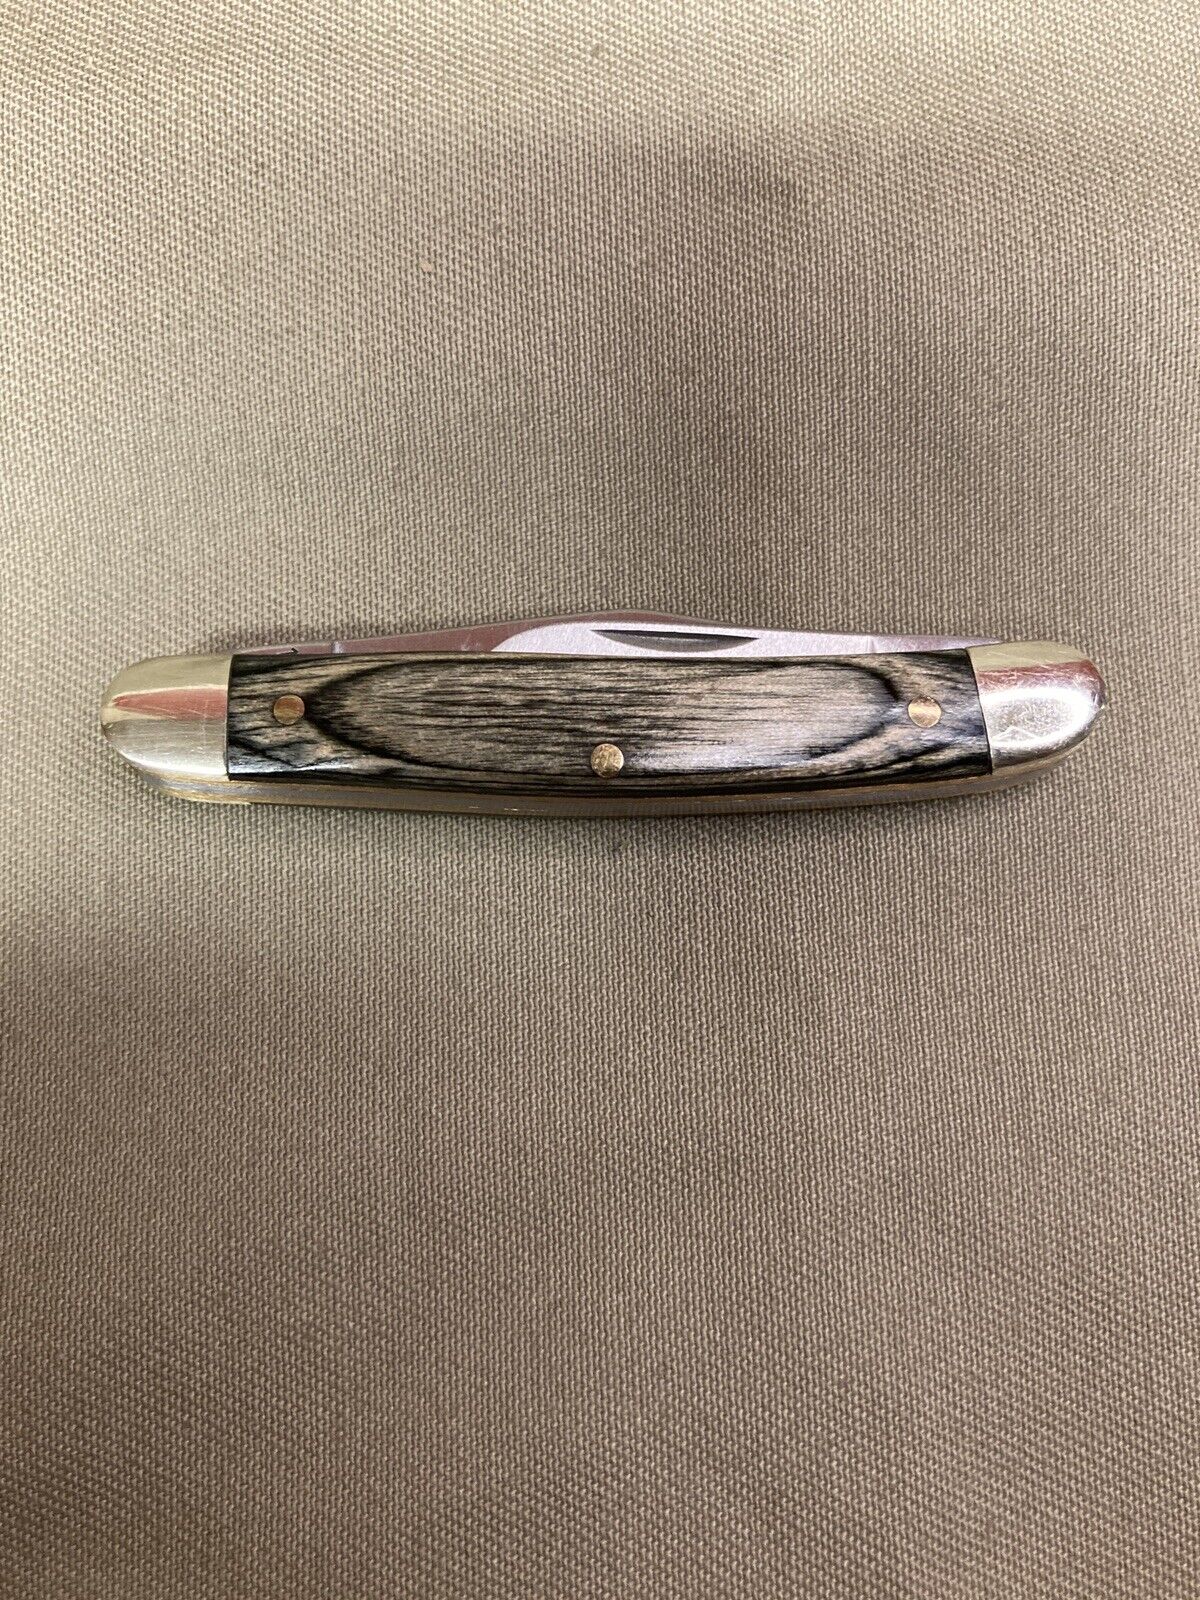 Schrade Old Timer Folding 2 Blade Pocket Knife, Gray Wood, 1143414 S22286